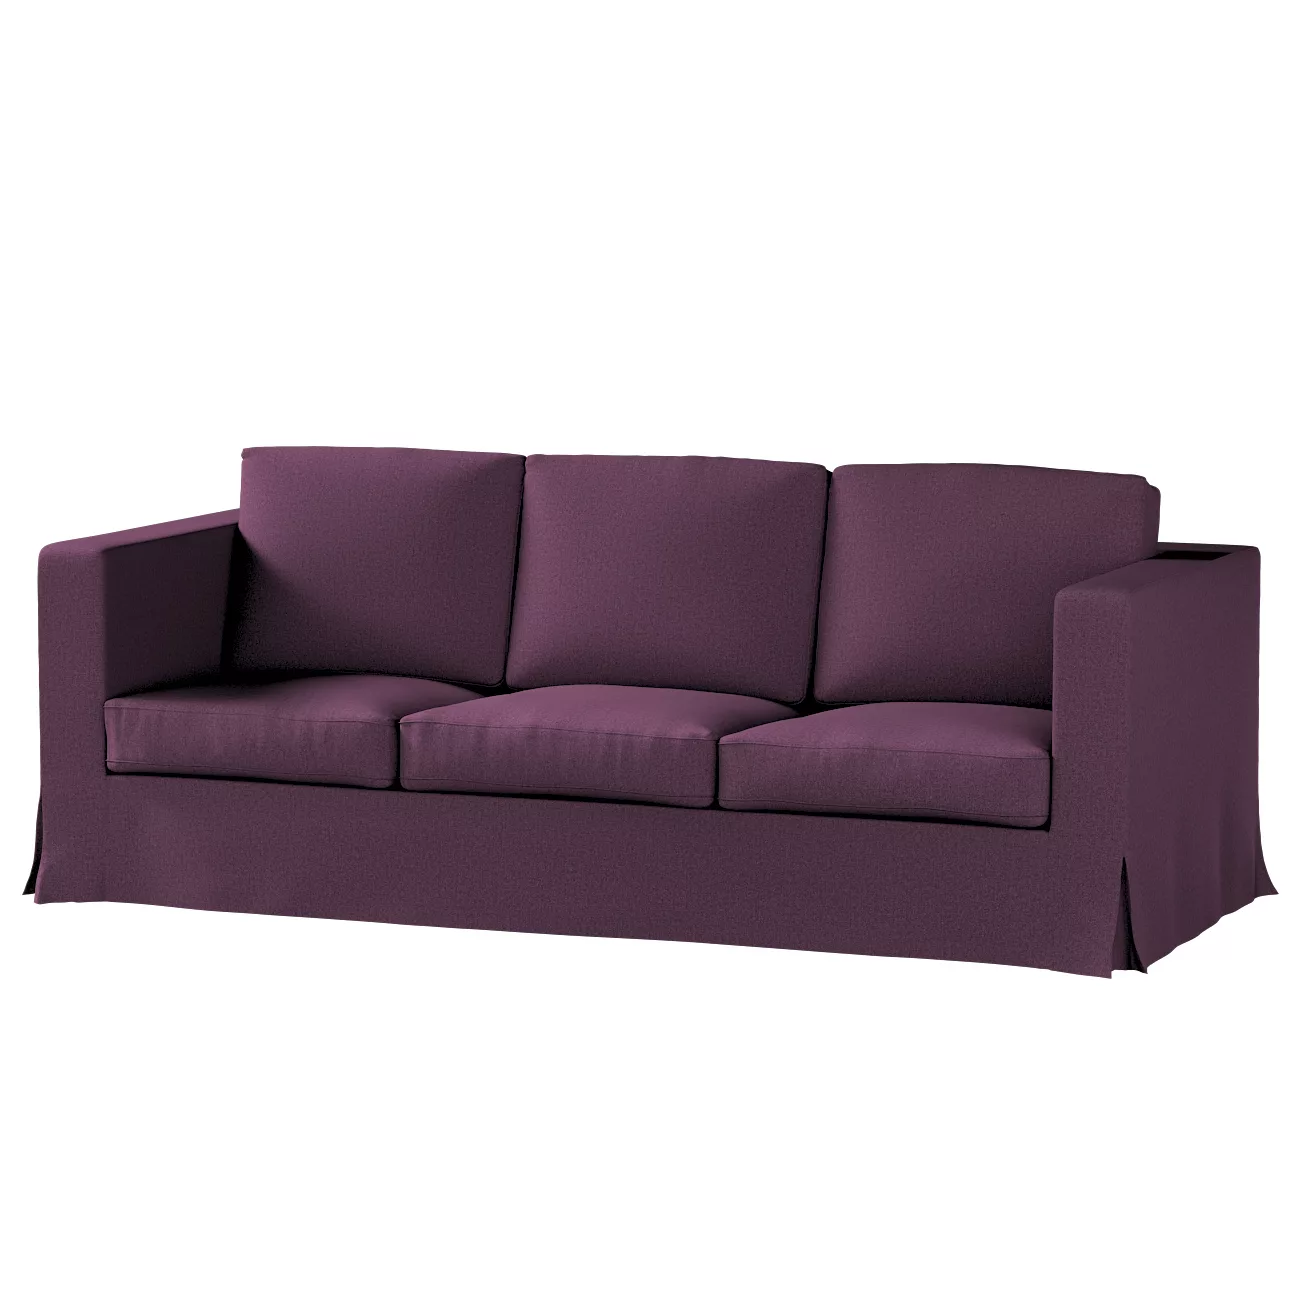 Bezug für Karlanda 3-Sitzer Sofa nicht ausklappbar, lang, pflaume, Bezug fü günstig online kaufen